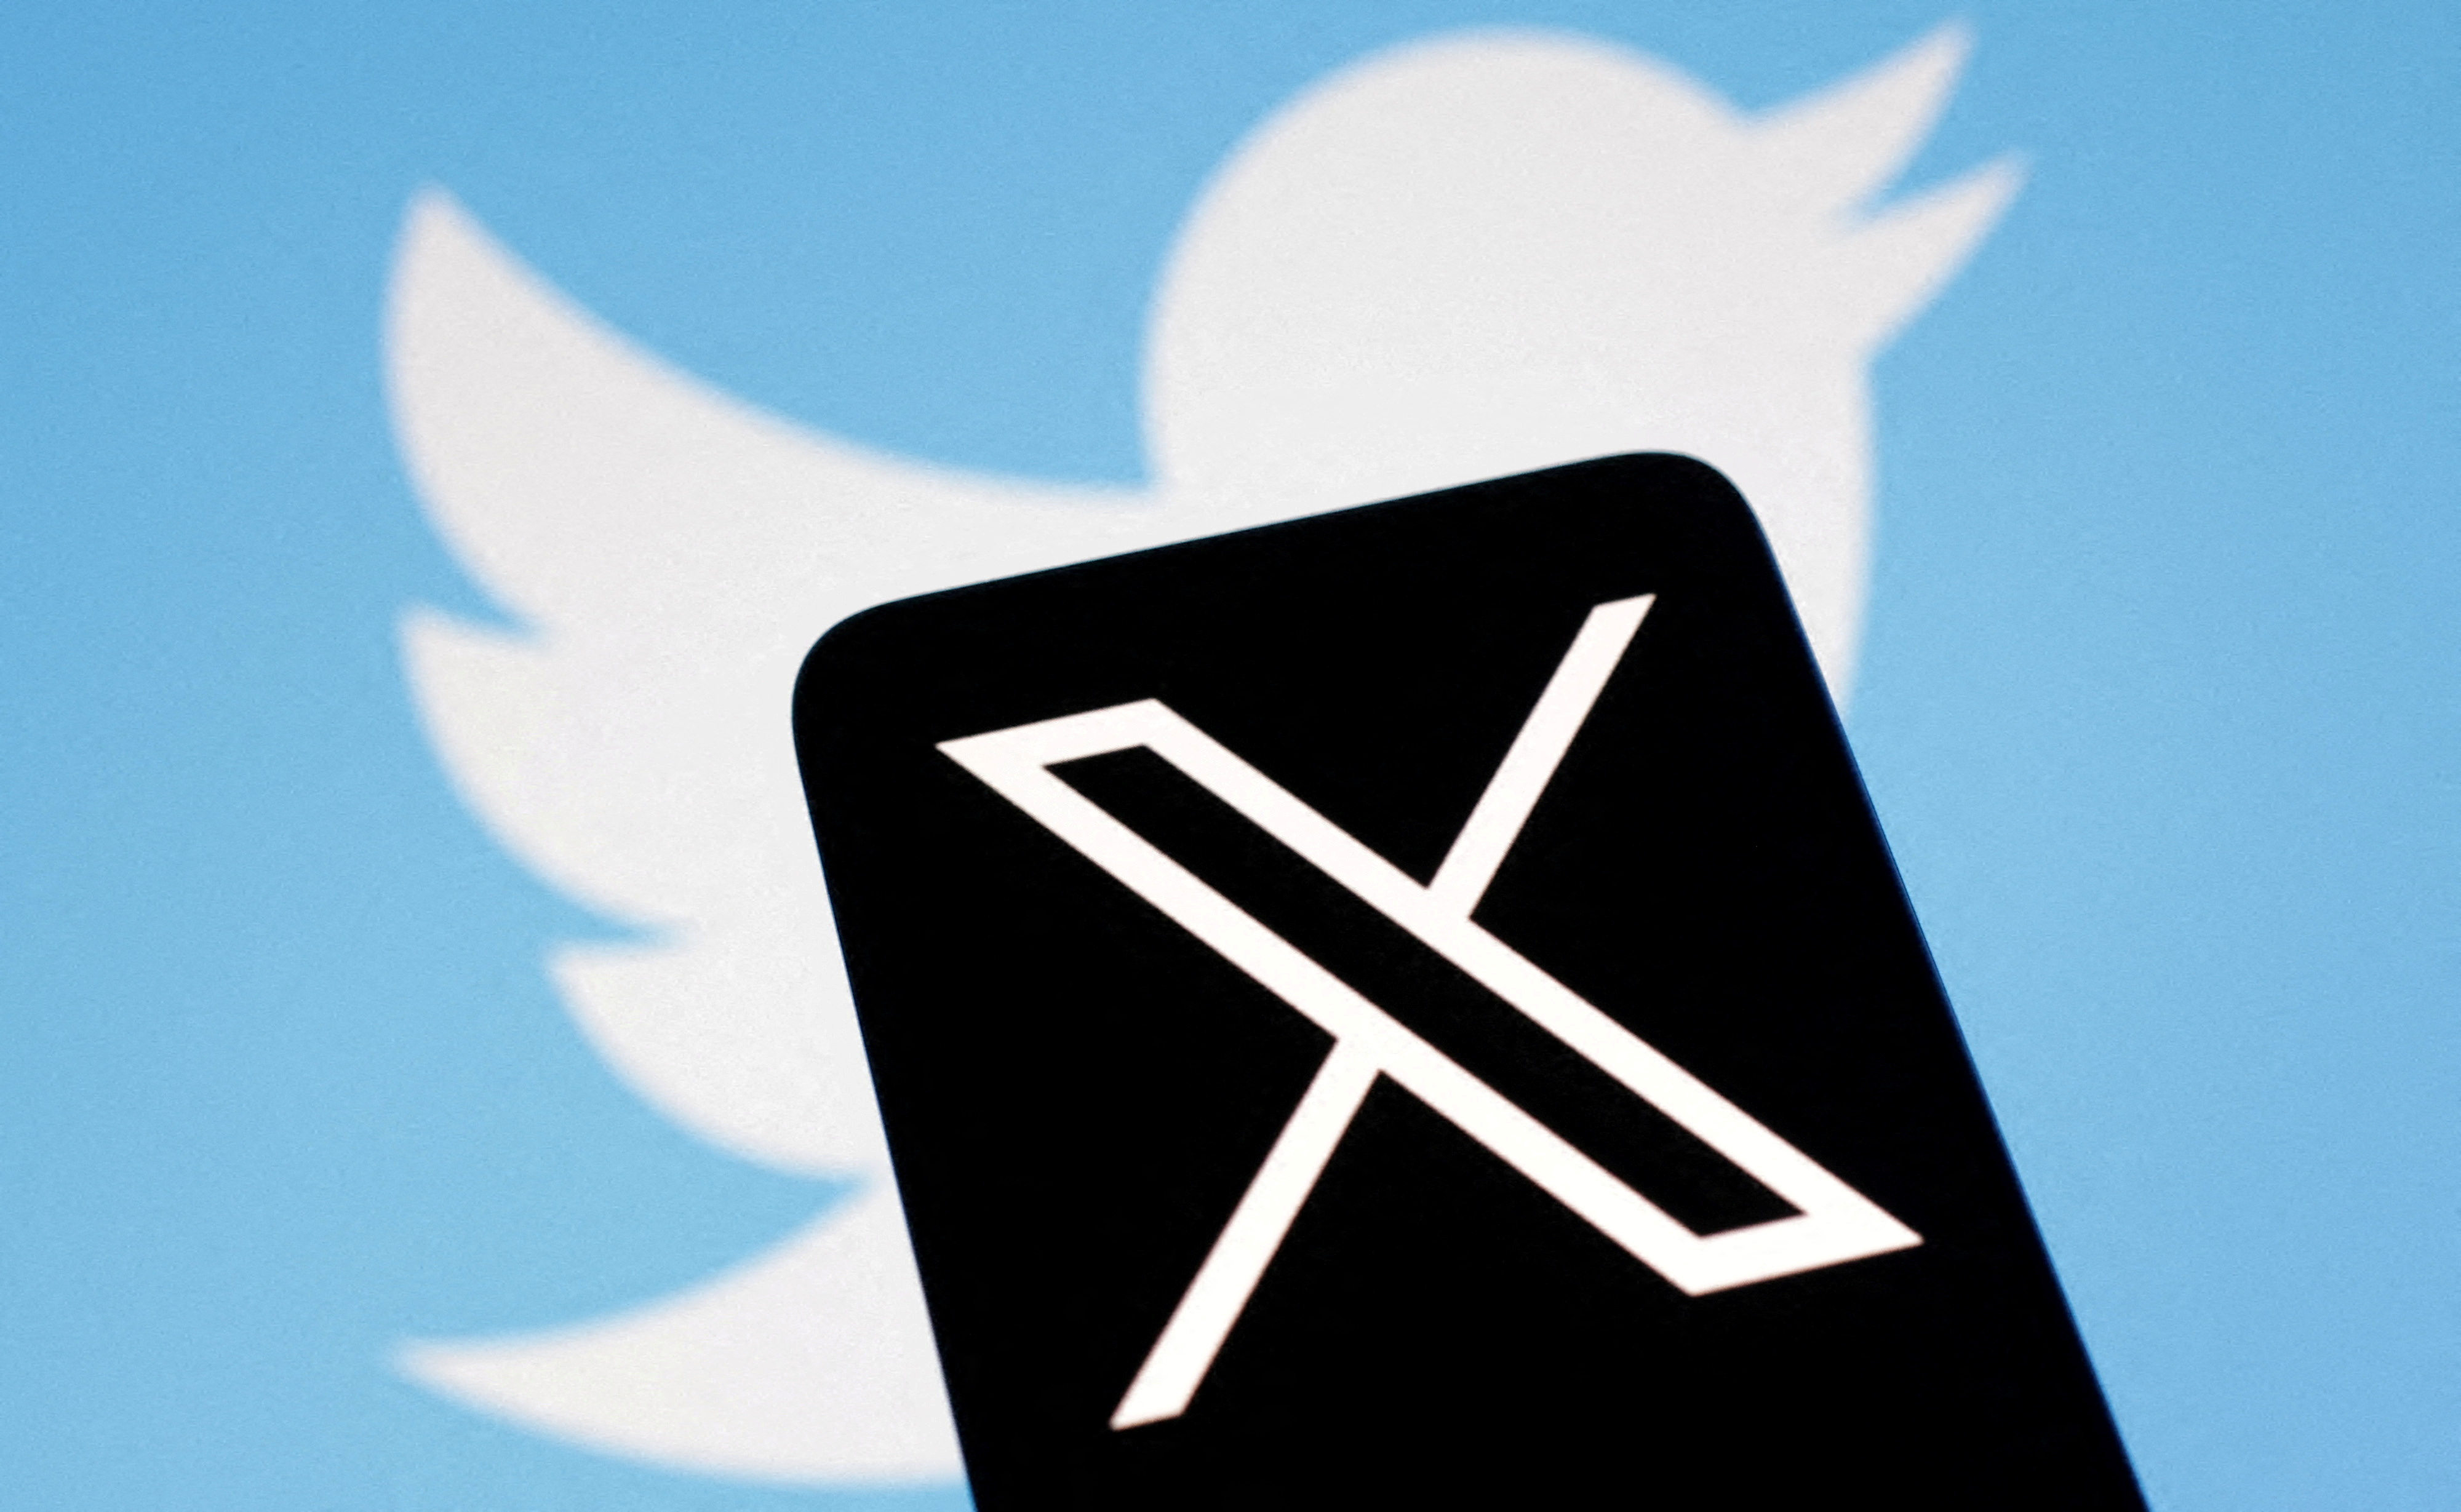 Illustration shows Twitter's new logo